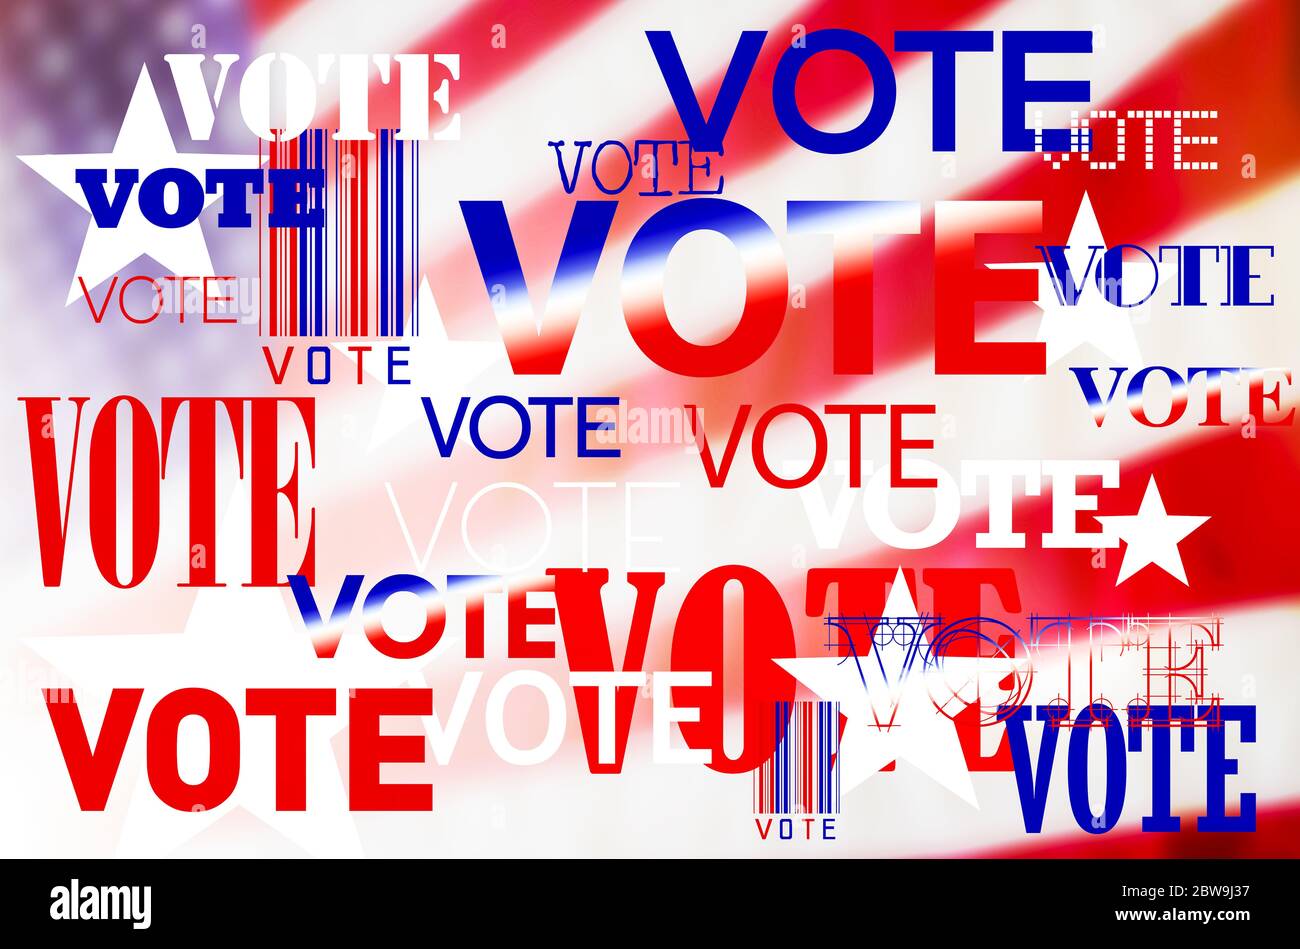 Immagine generata digitalmente della bandiera americana e dei segni di voto Foto Stock